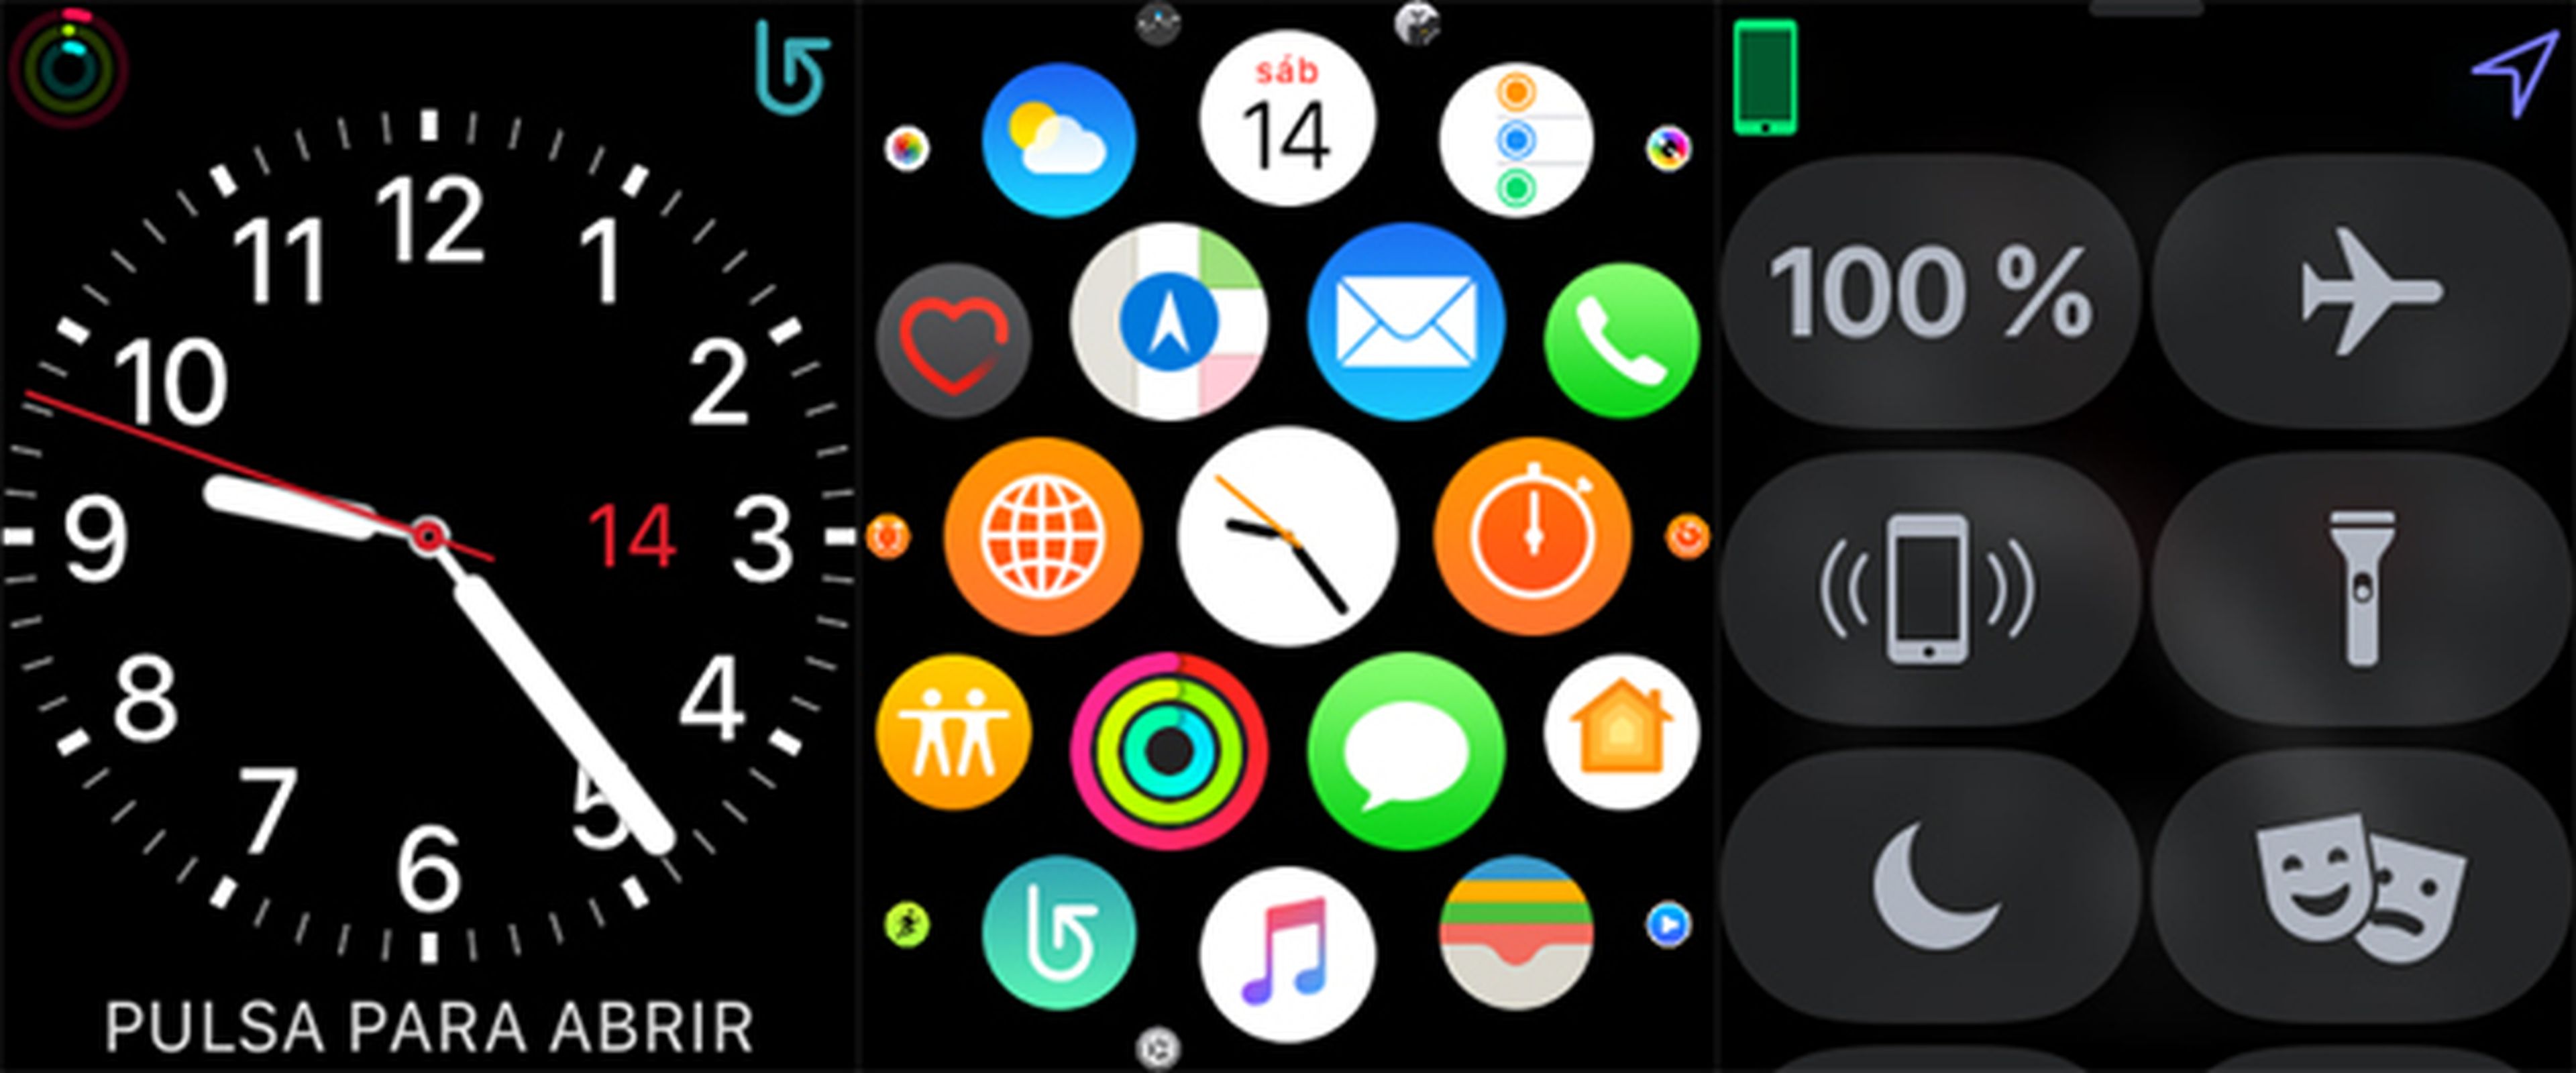 Así es la interfaz de watchOS 4 en el Apple Watch Series 3